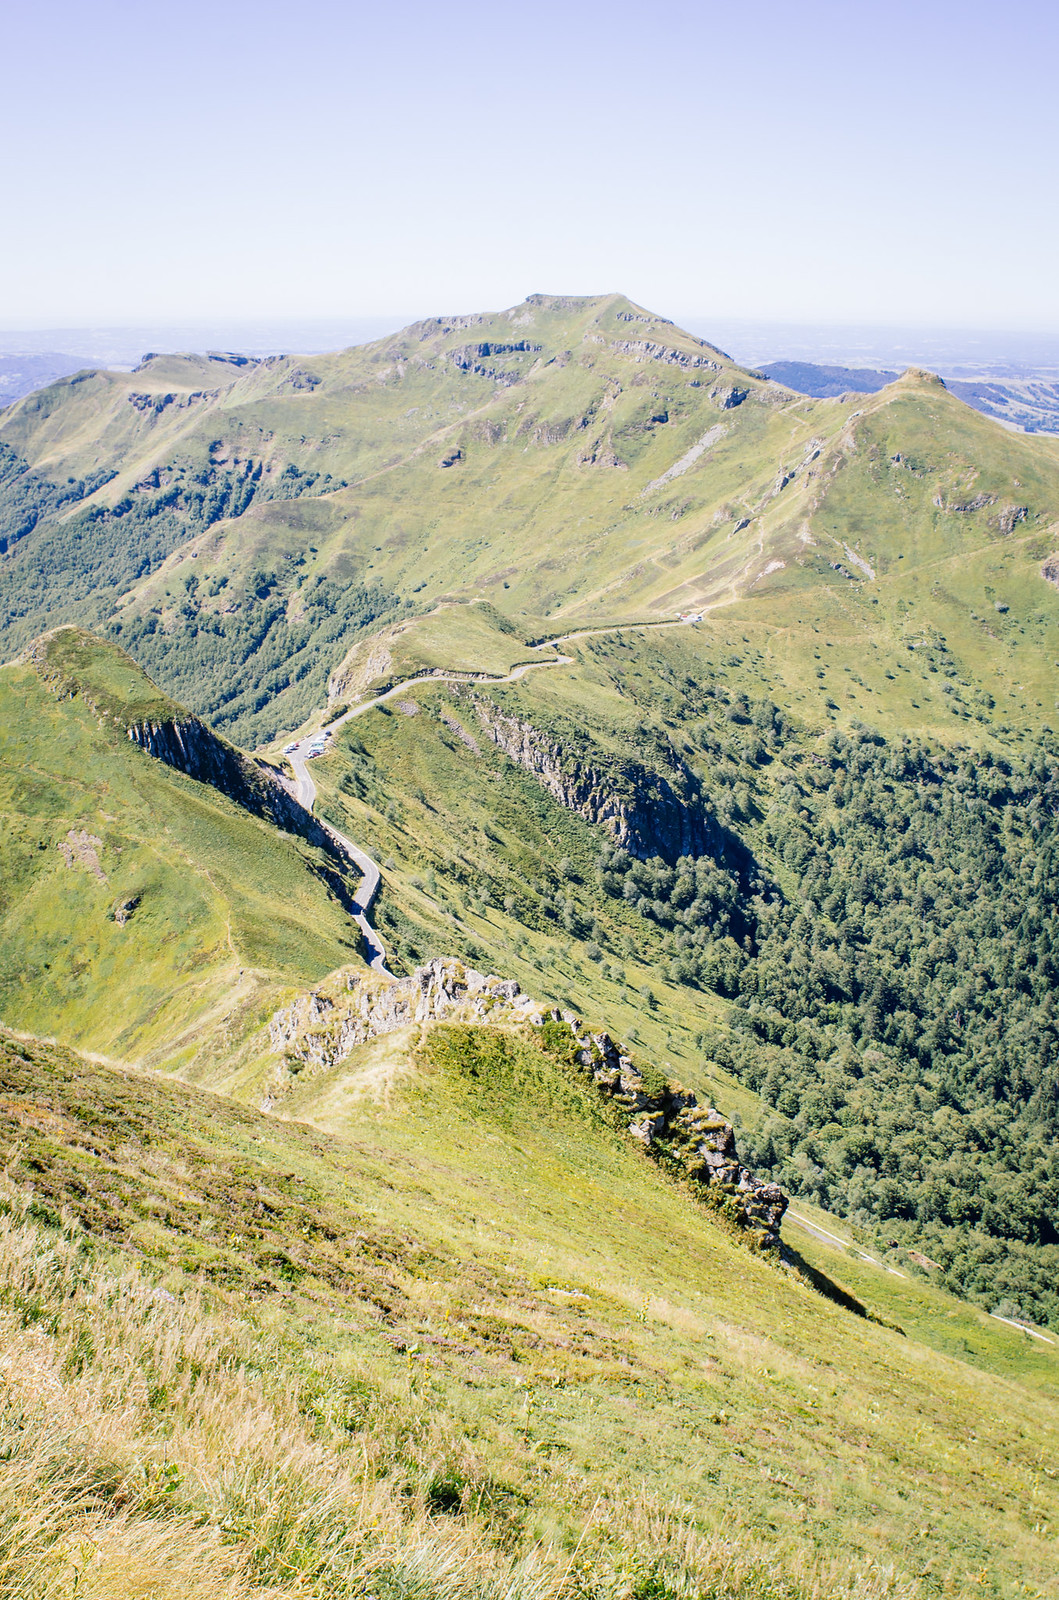 Le Cantal à vélo - Puy Mary et parc naturel régional des volcans d'Auvergne - Carnet de voyage France